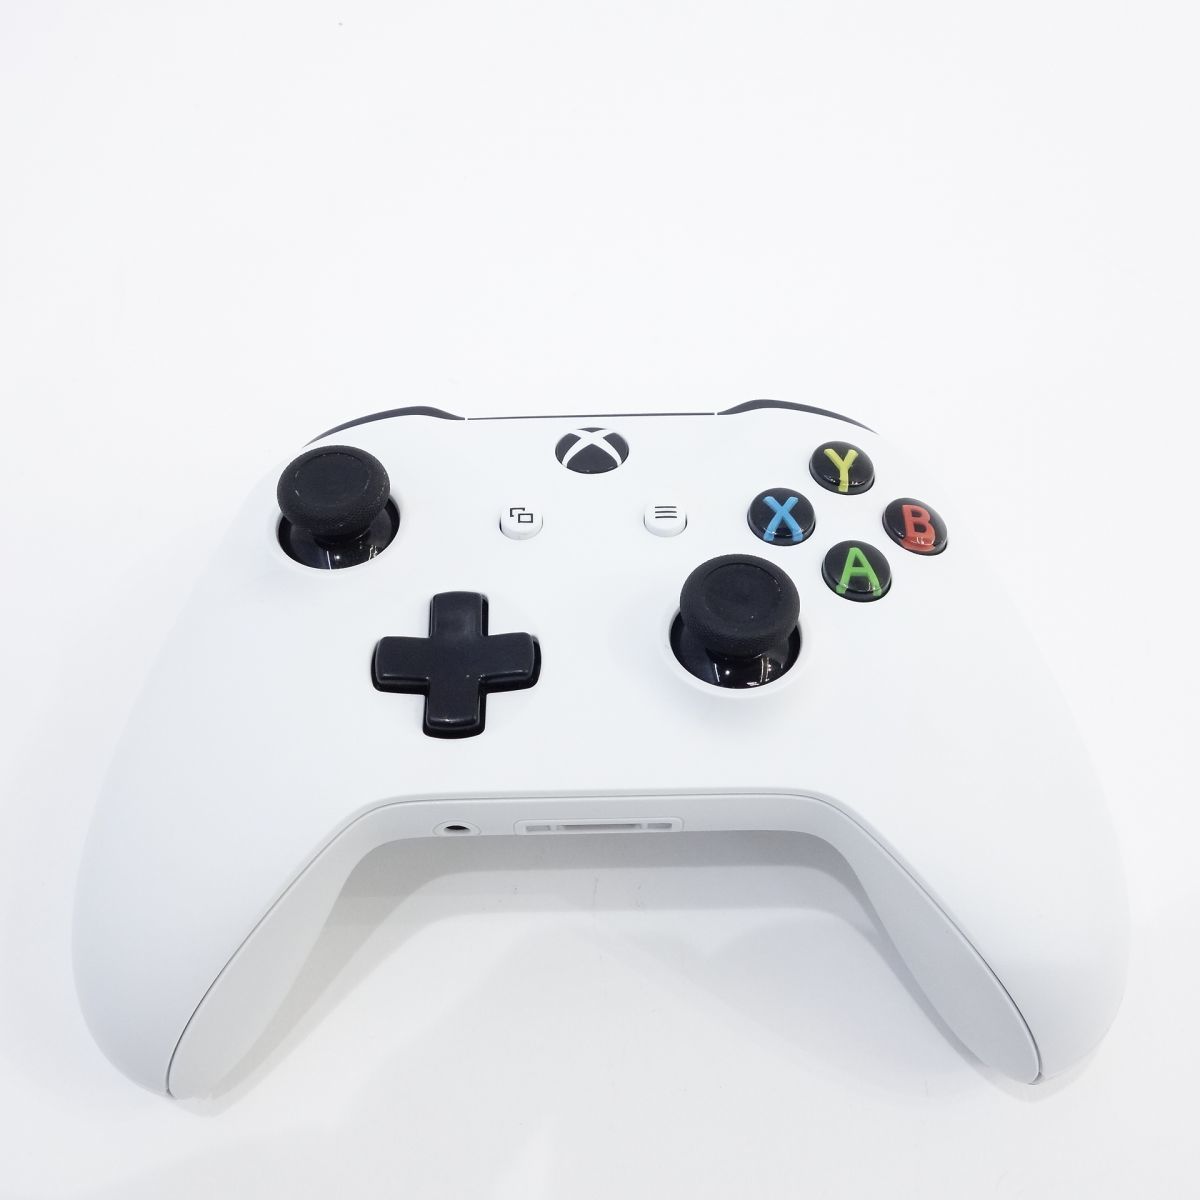 tu052 Xbox One ワイヤレス コントローラー Model 1708 ホワイト(アクセサリ、周辺機器)｜売買されたオークション情報、yahooの商品情報をアーカイブ公開  - オークファン（aucfan.com）